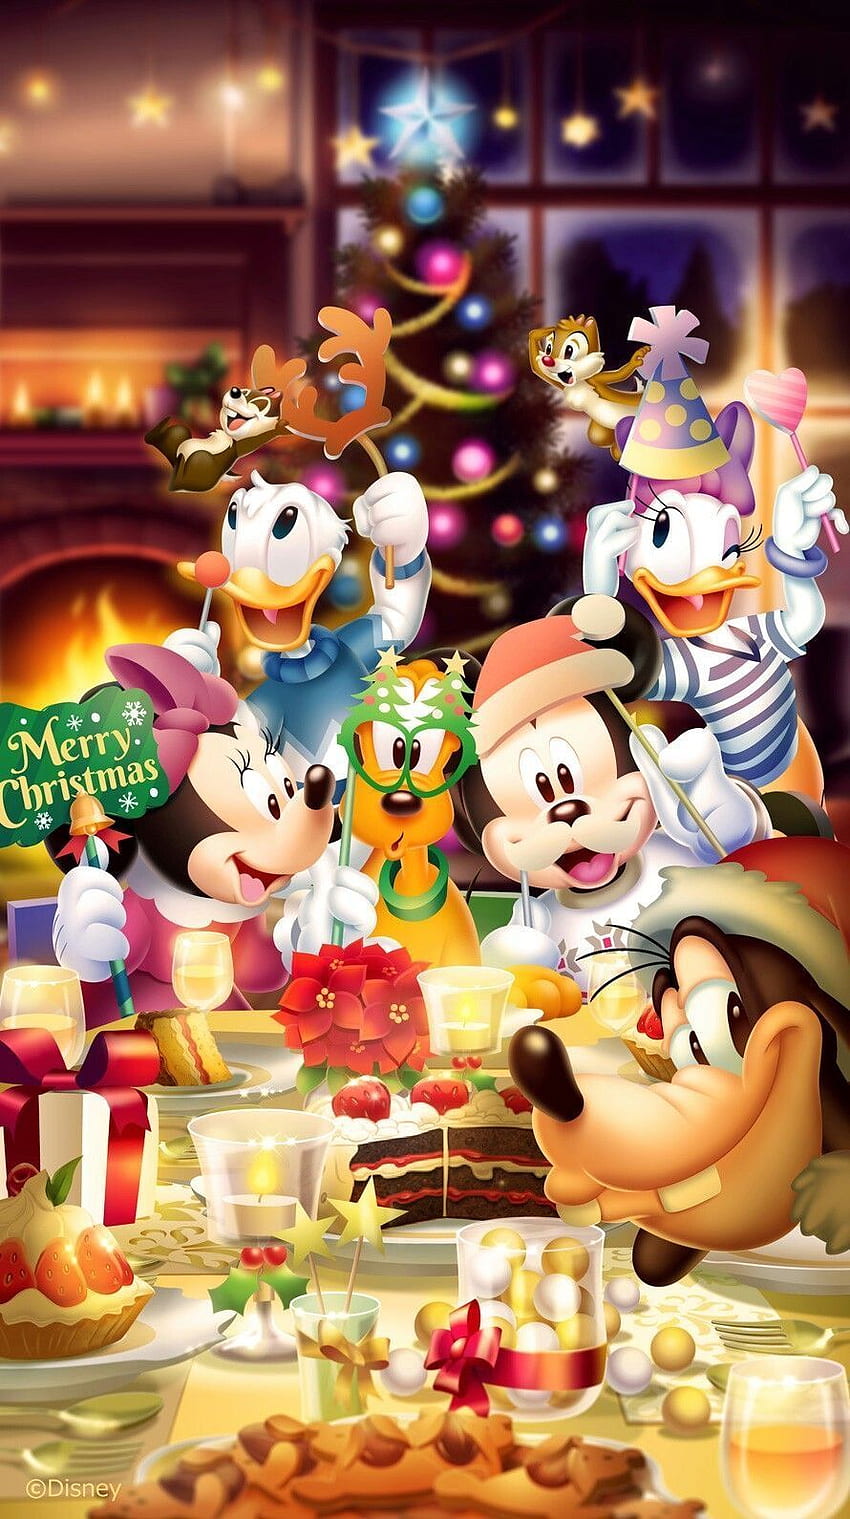 Hãy đắm mình trong không khí Giáng sinh thần tiên cùng Noël Disney và hình ảnh đáng yêu về những chú chuột Mickey, Donald Duck, Cinderella,... đang vui chơi, tặng quà và chào đón mùa lễ hội đặc biệt này. Hãy nhấn vào ảnh để khám phá thế giới đáng yêu này cùng chúng tôi!